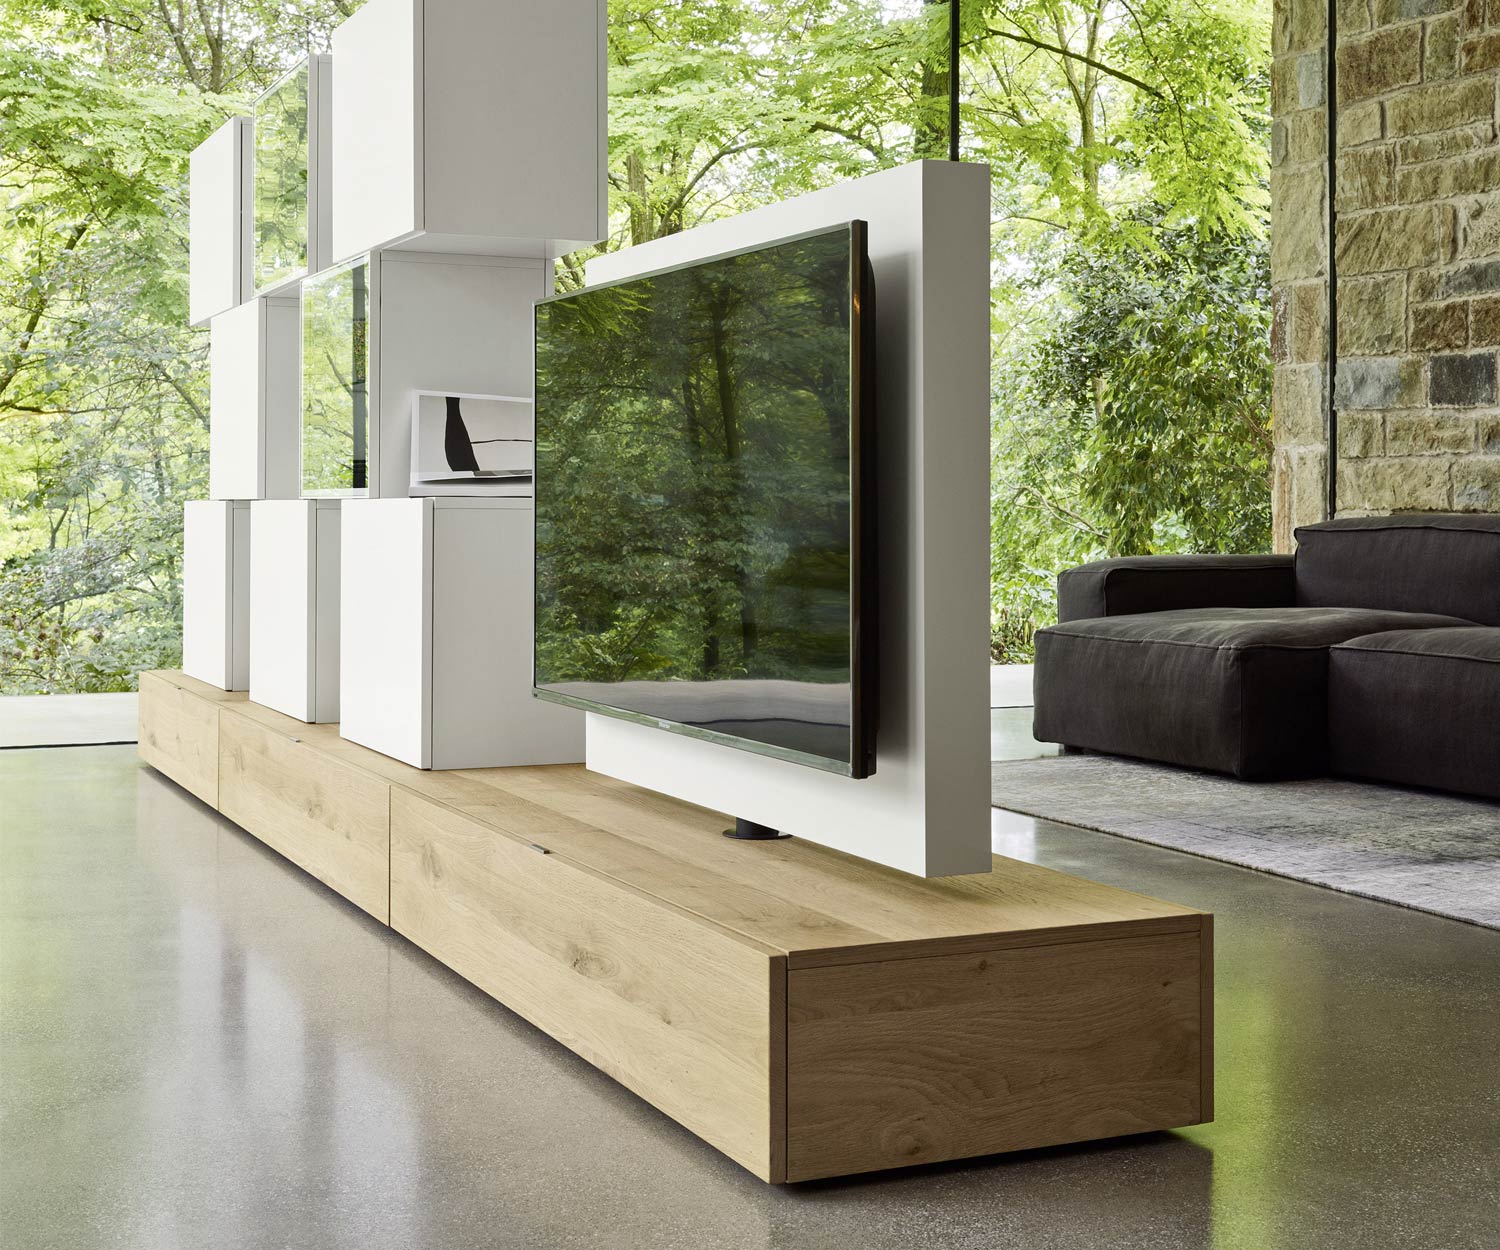 Exclusief Livitalia Design wandmeubel C46 met draaibaar TV-paneel in mat wit